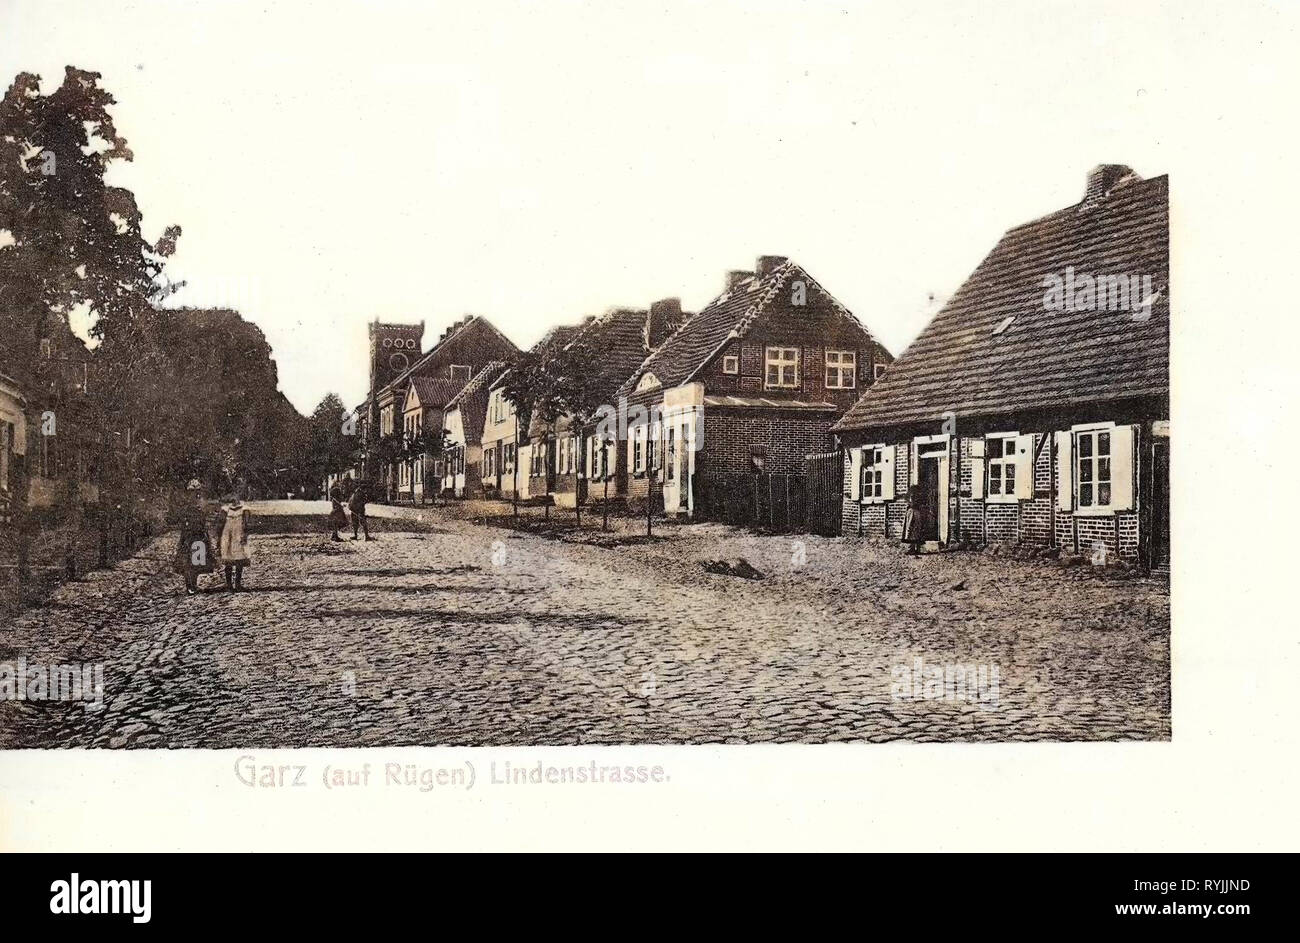 Edificios en Alemania, Garzón/Rügen, 1899, en el Estado federado de Mecklemburgo-Pomerania, Garz, Rügen, Lindenstraße Foto de stock